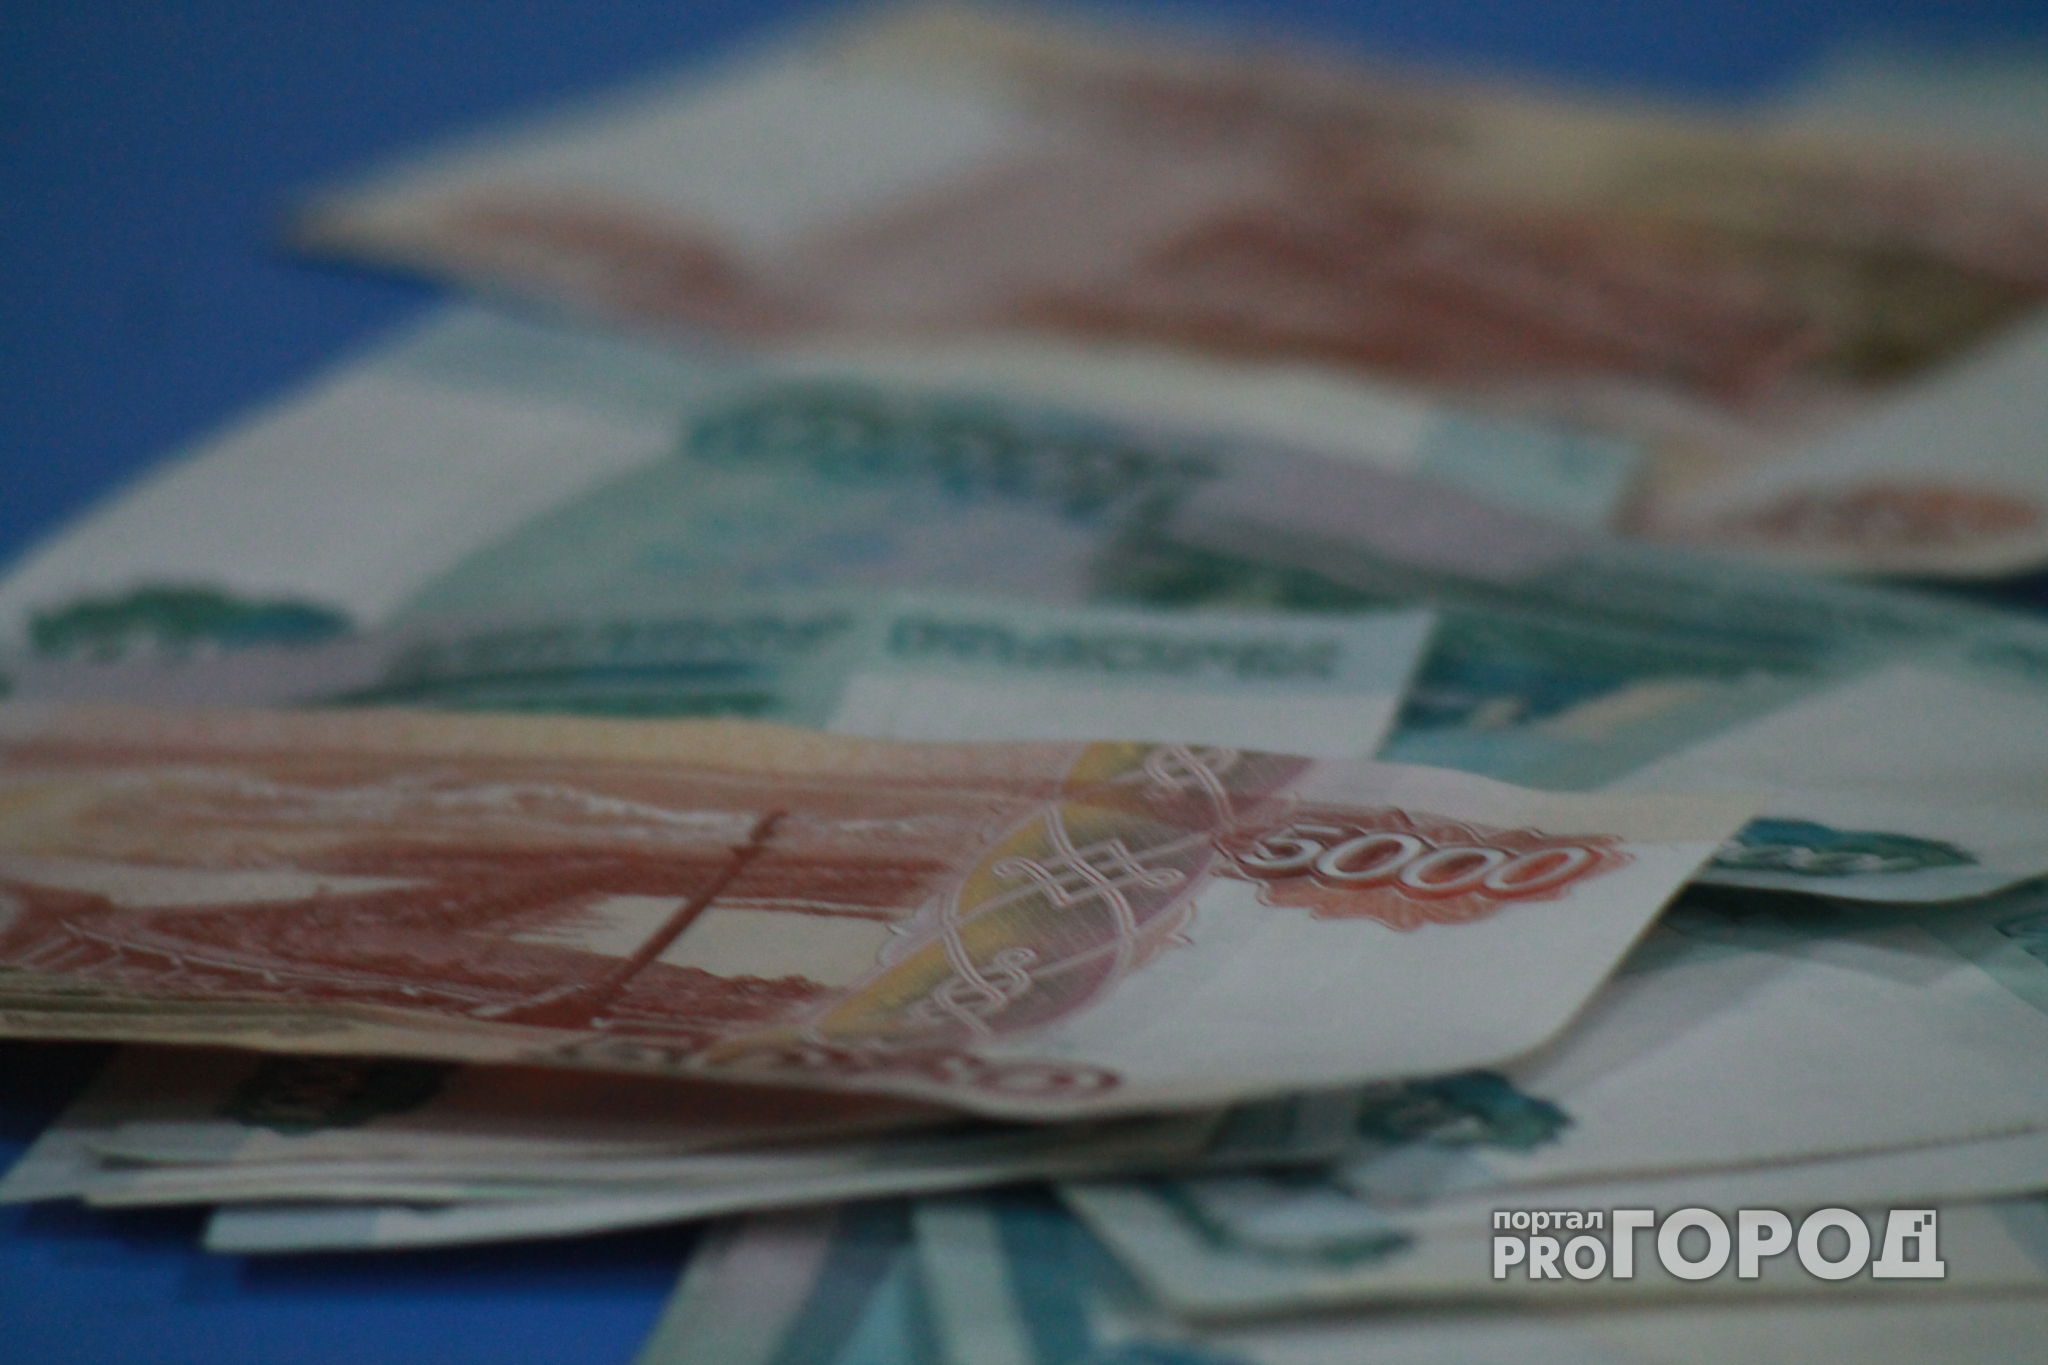 Нижнему Новгороду присвоен кредитный рейтинг с прогнозом «Стабильный»